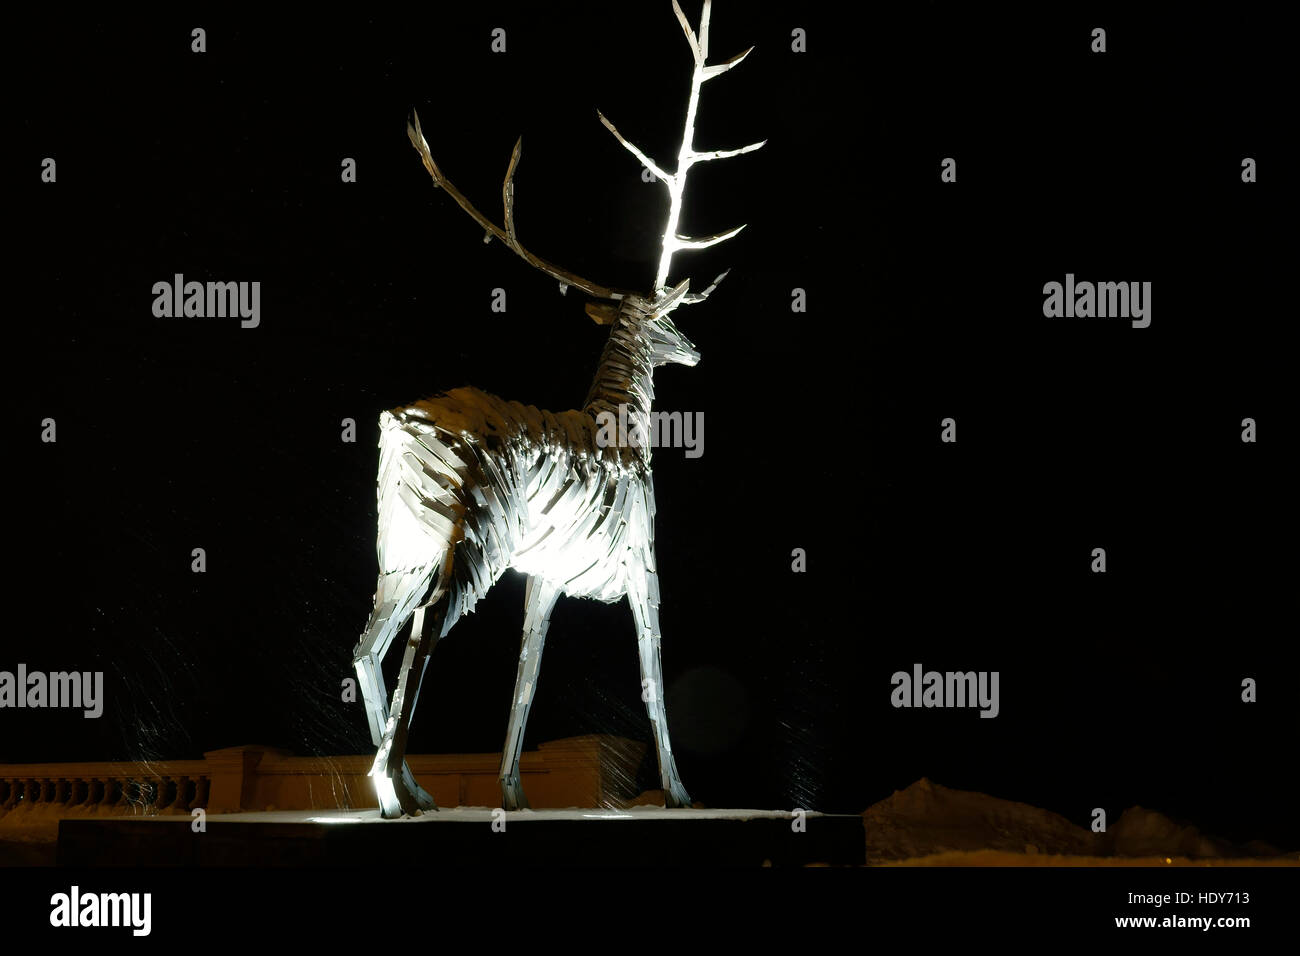 Reindeer Stock Photo